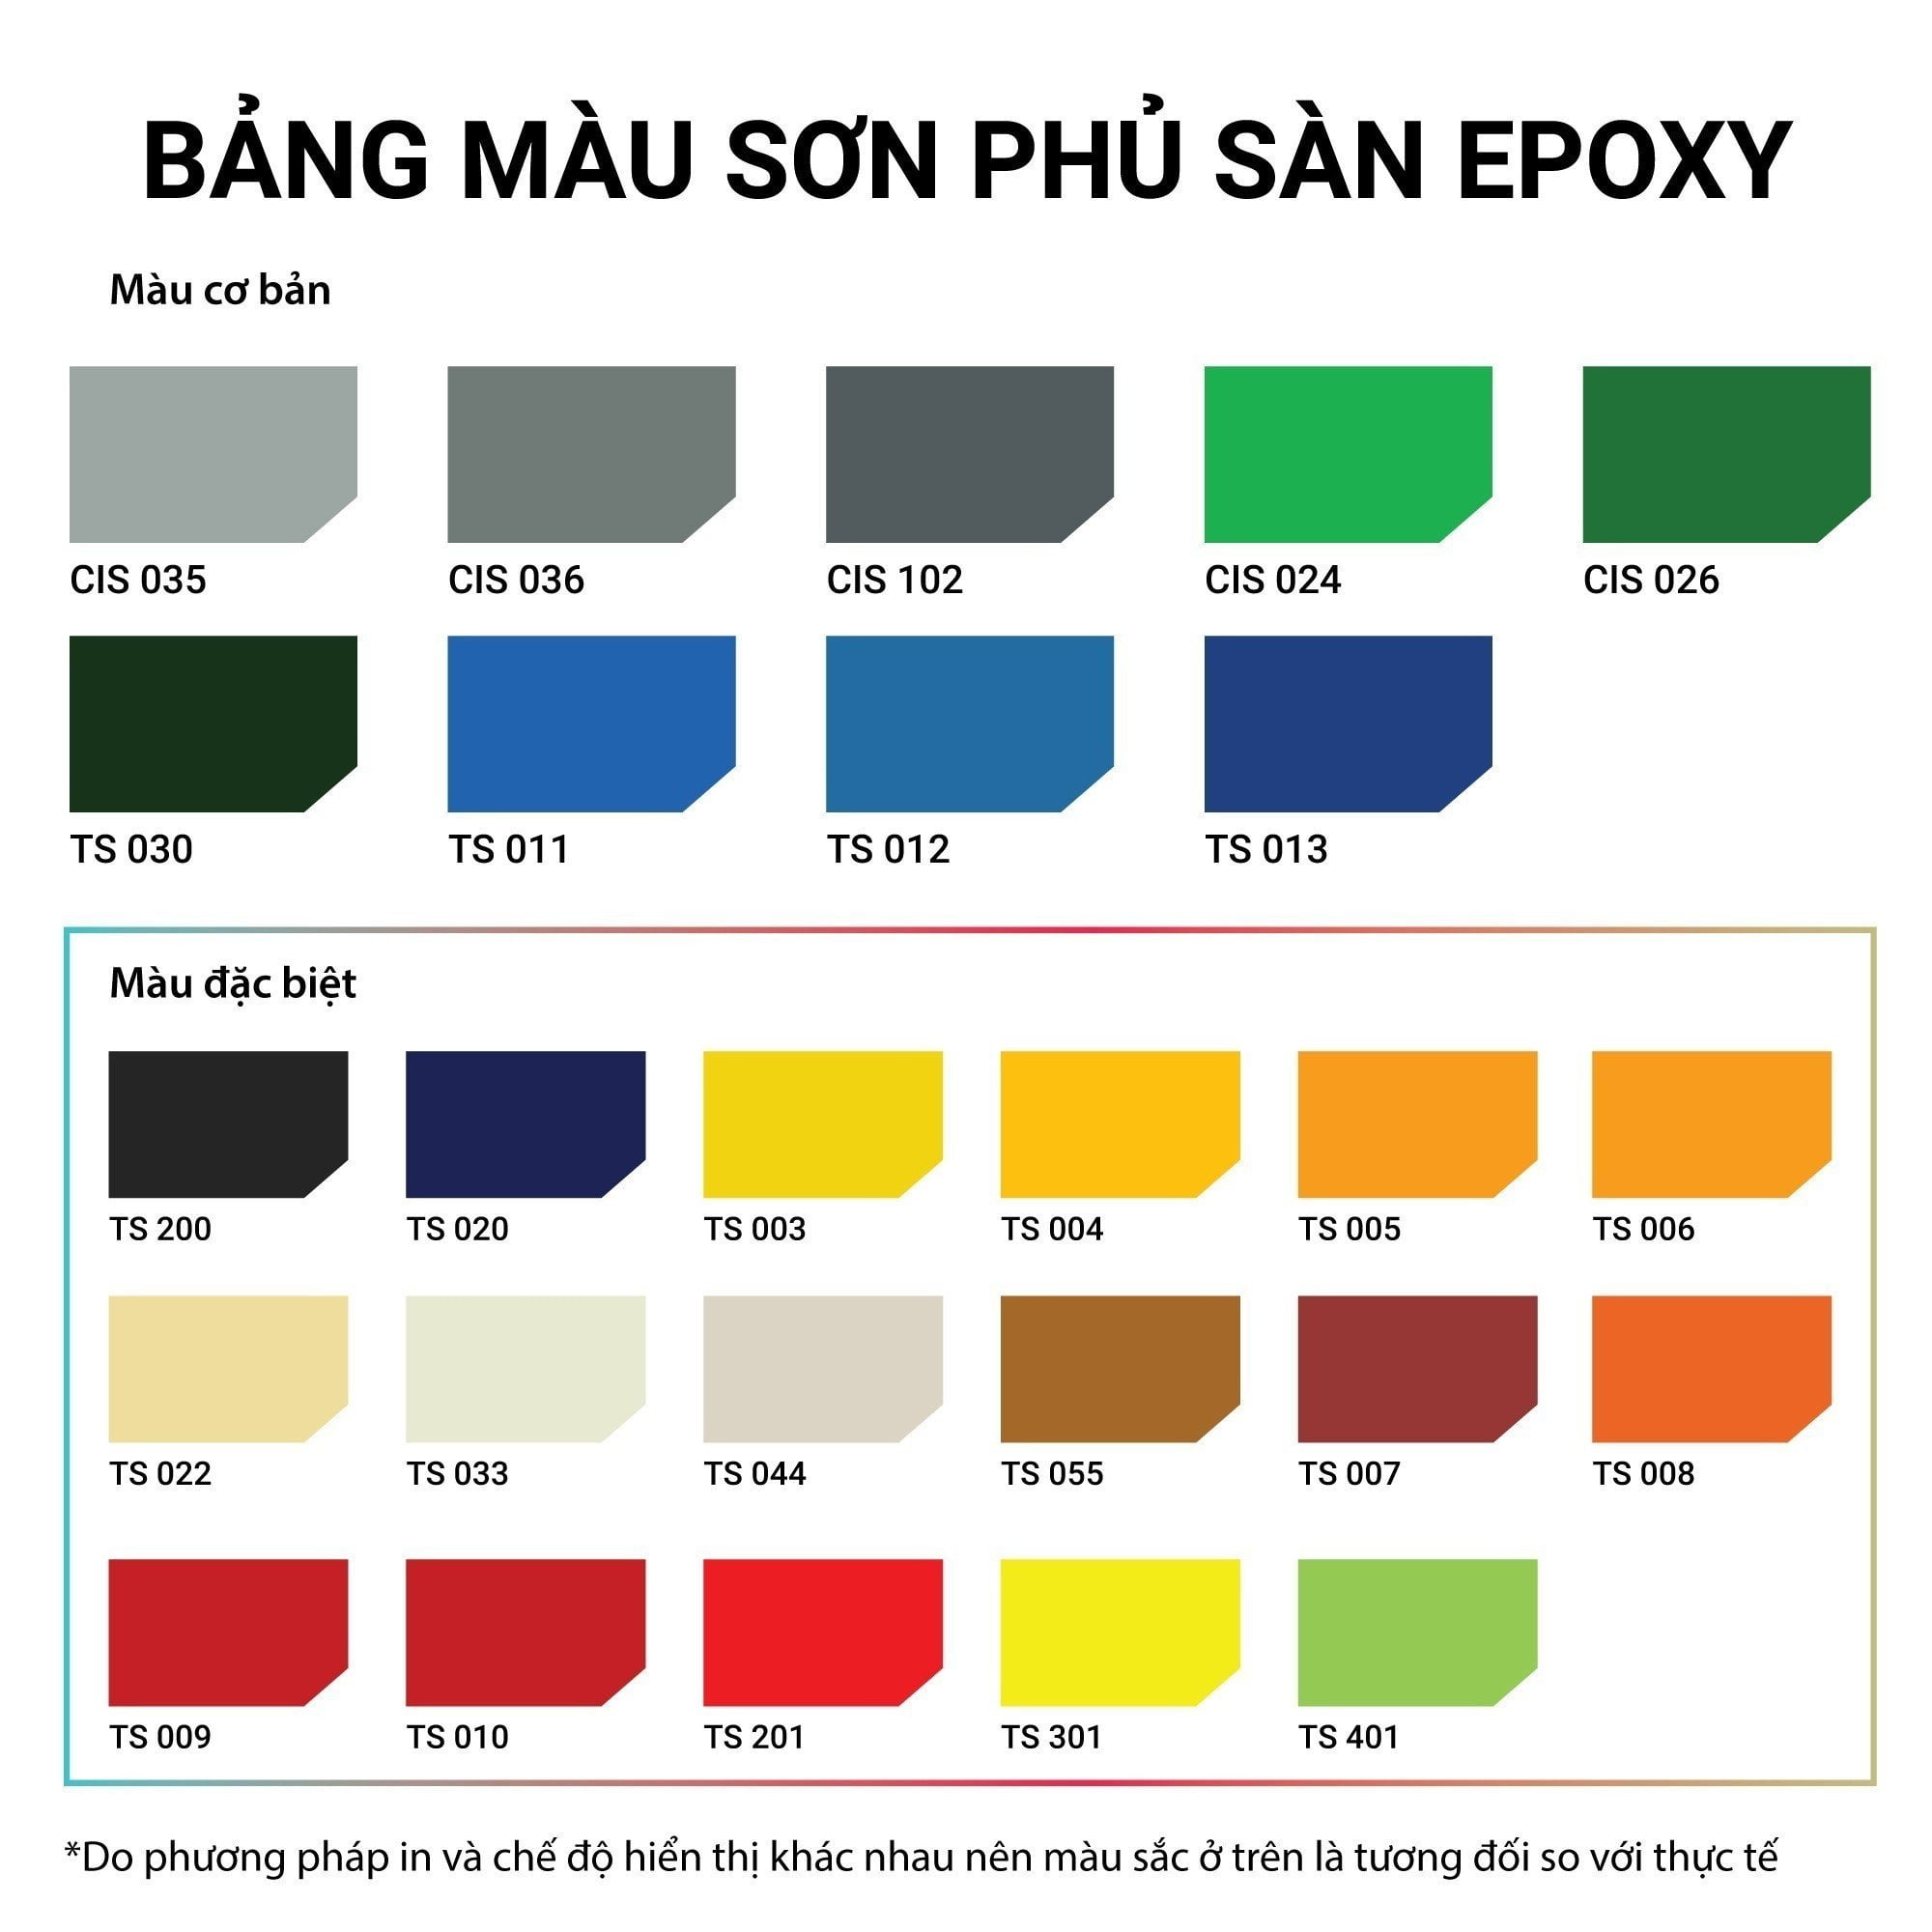 Bang-mau-son-phu-san-epoxy-new.jpg